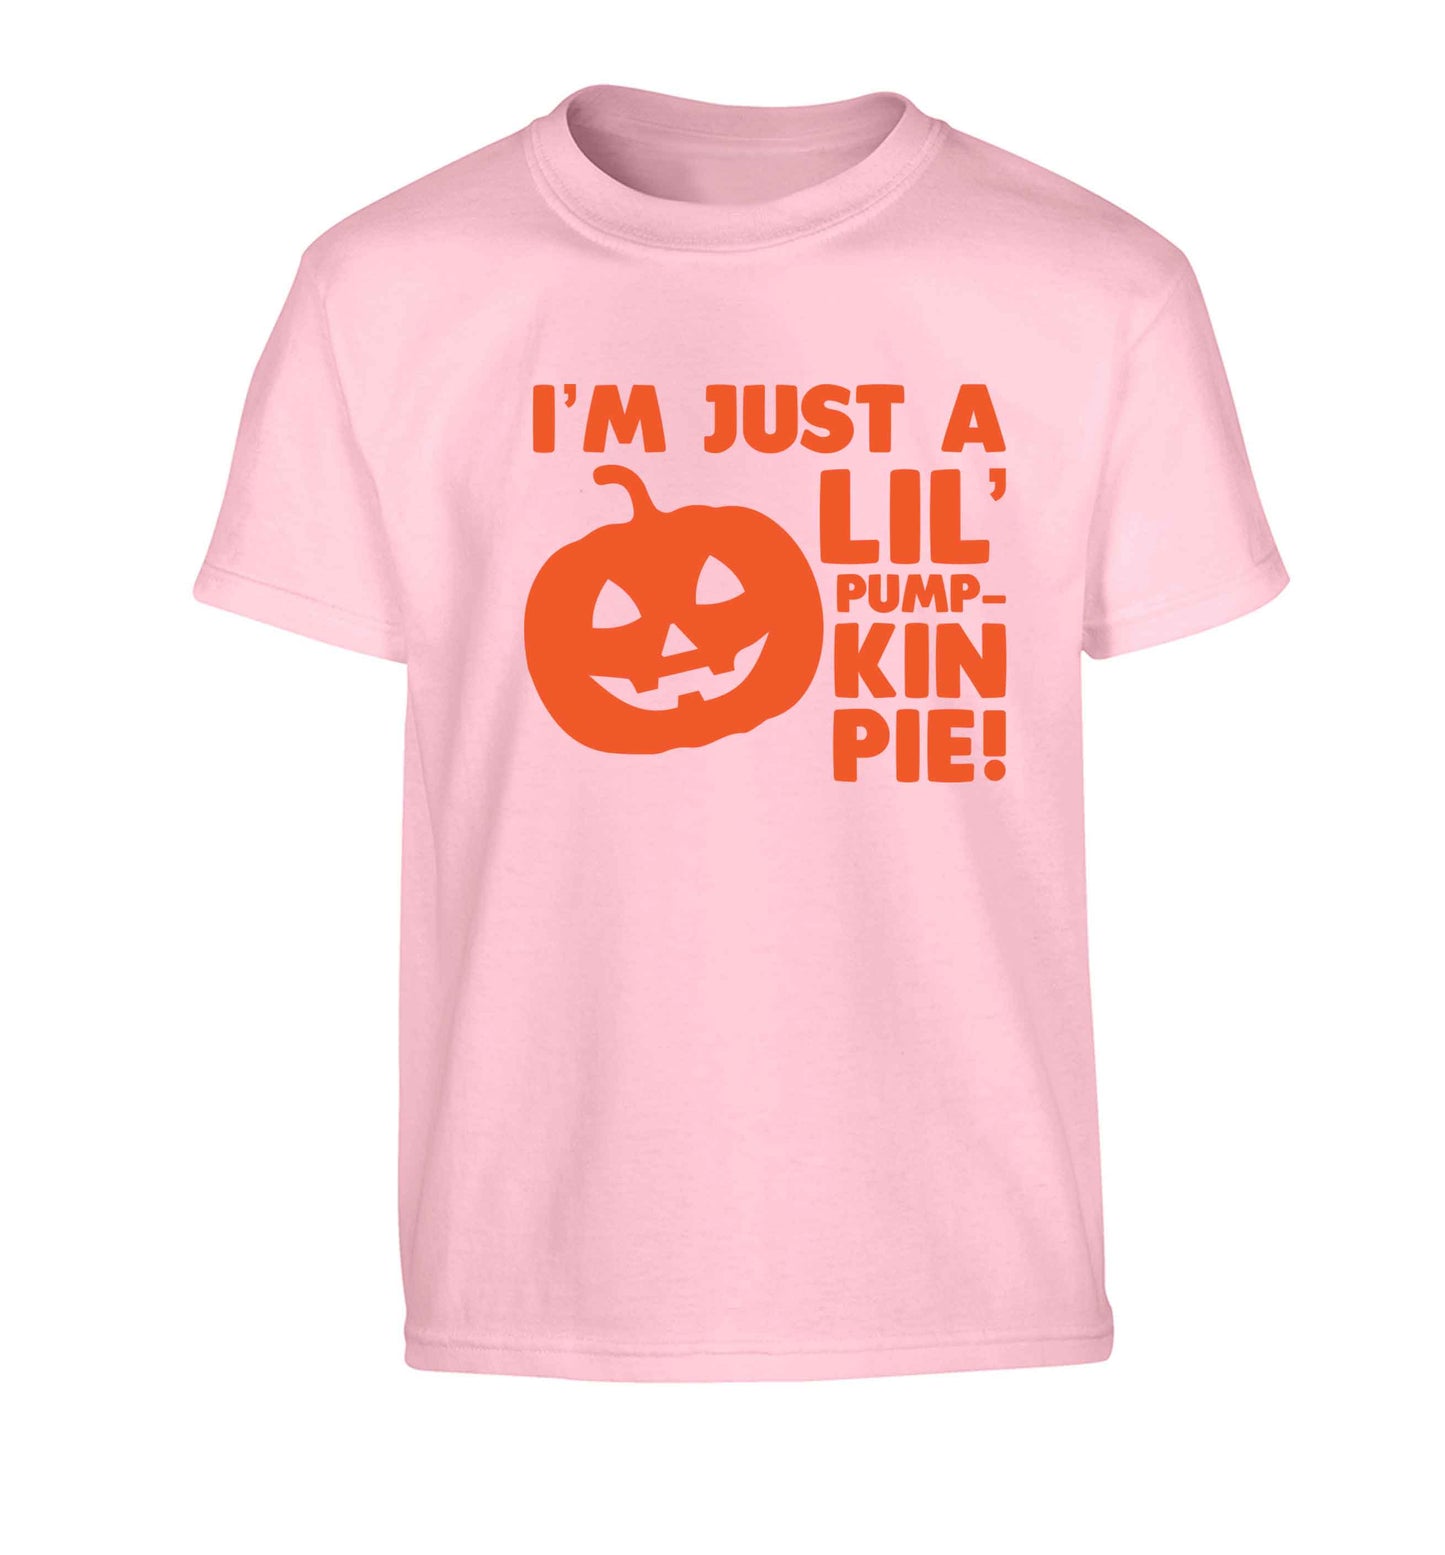 I'm just a lil' pumpkin pie Children's light pink Tshirt 12-13 Years